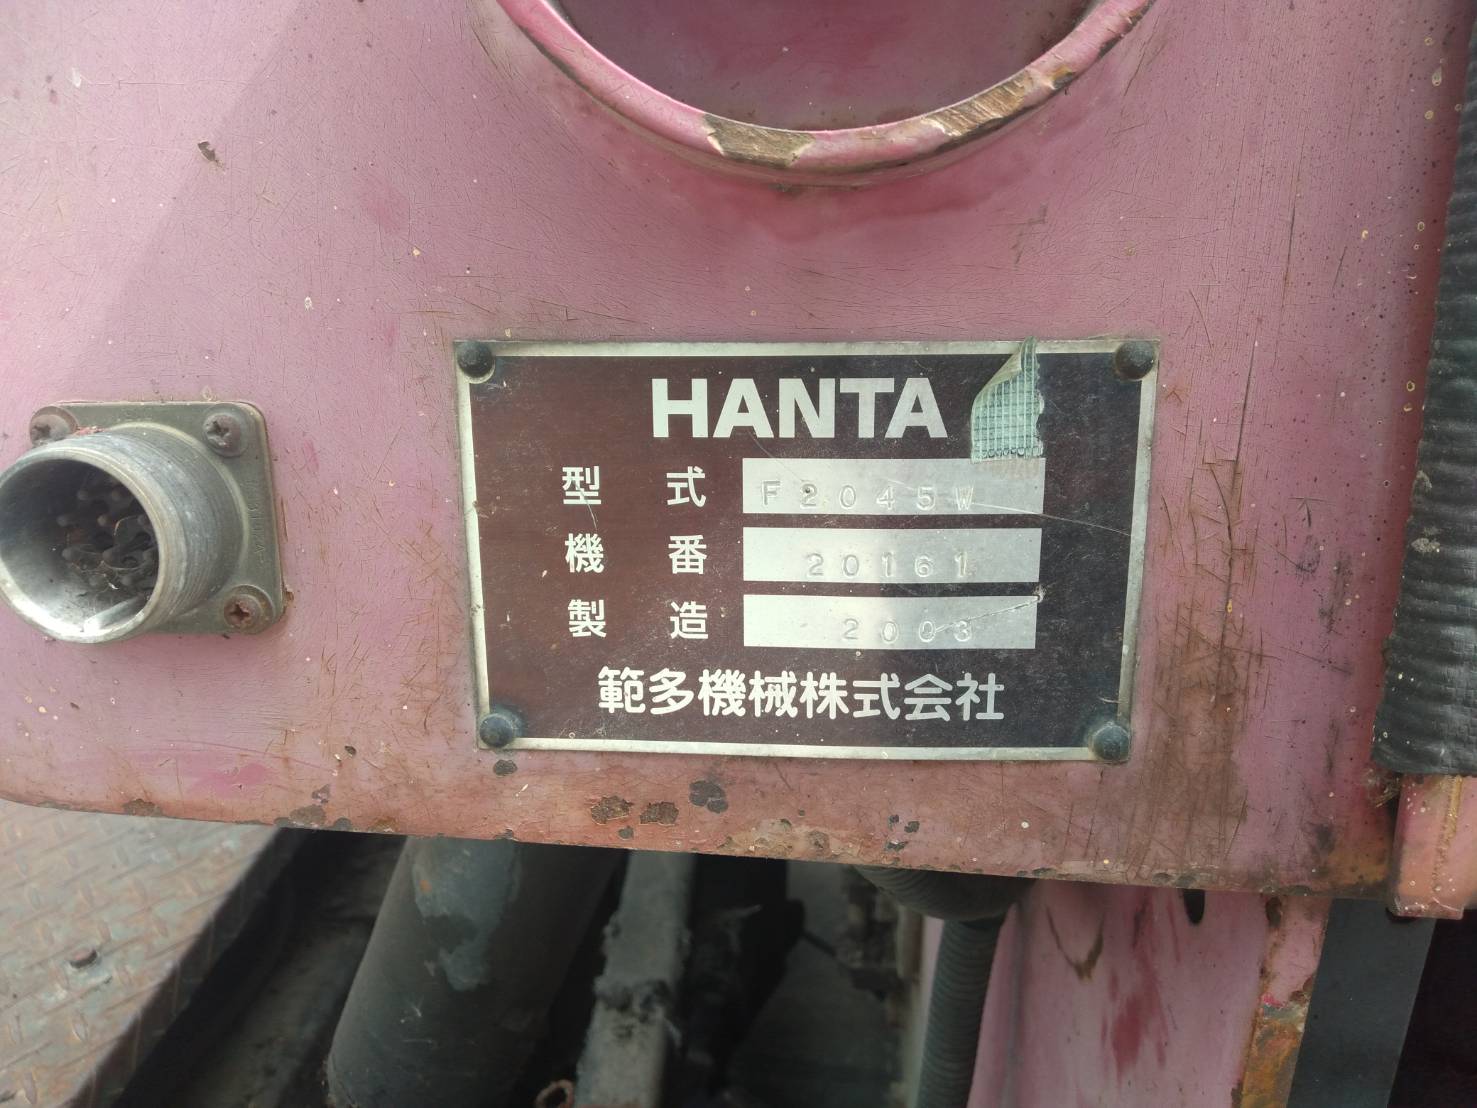 HANTA-F2045W-F40WD-20161 (2)